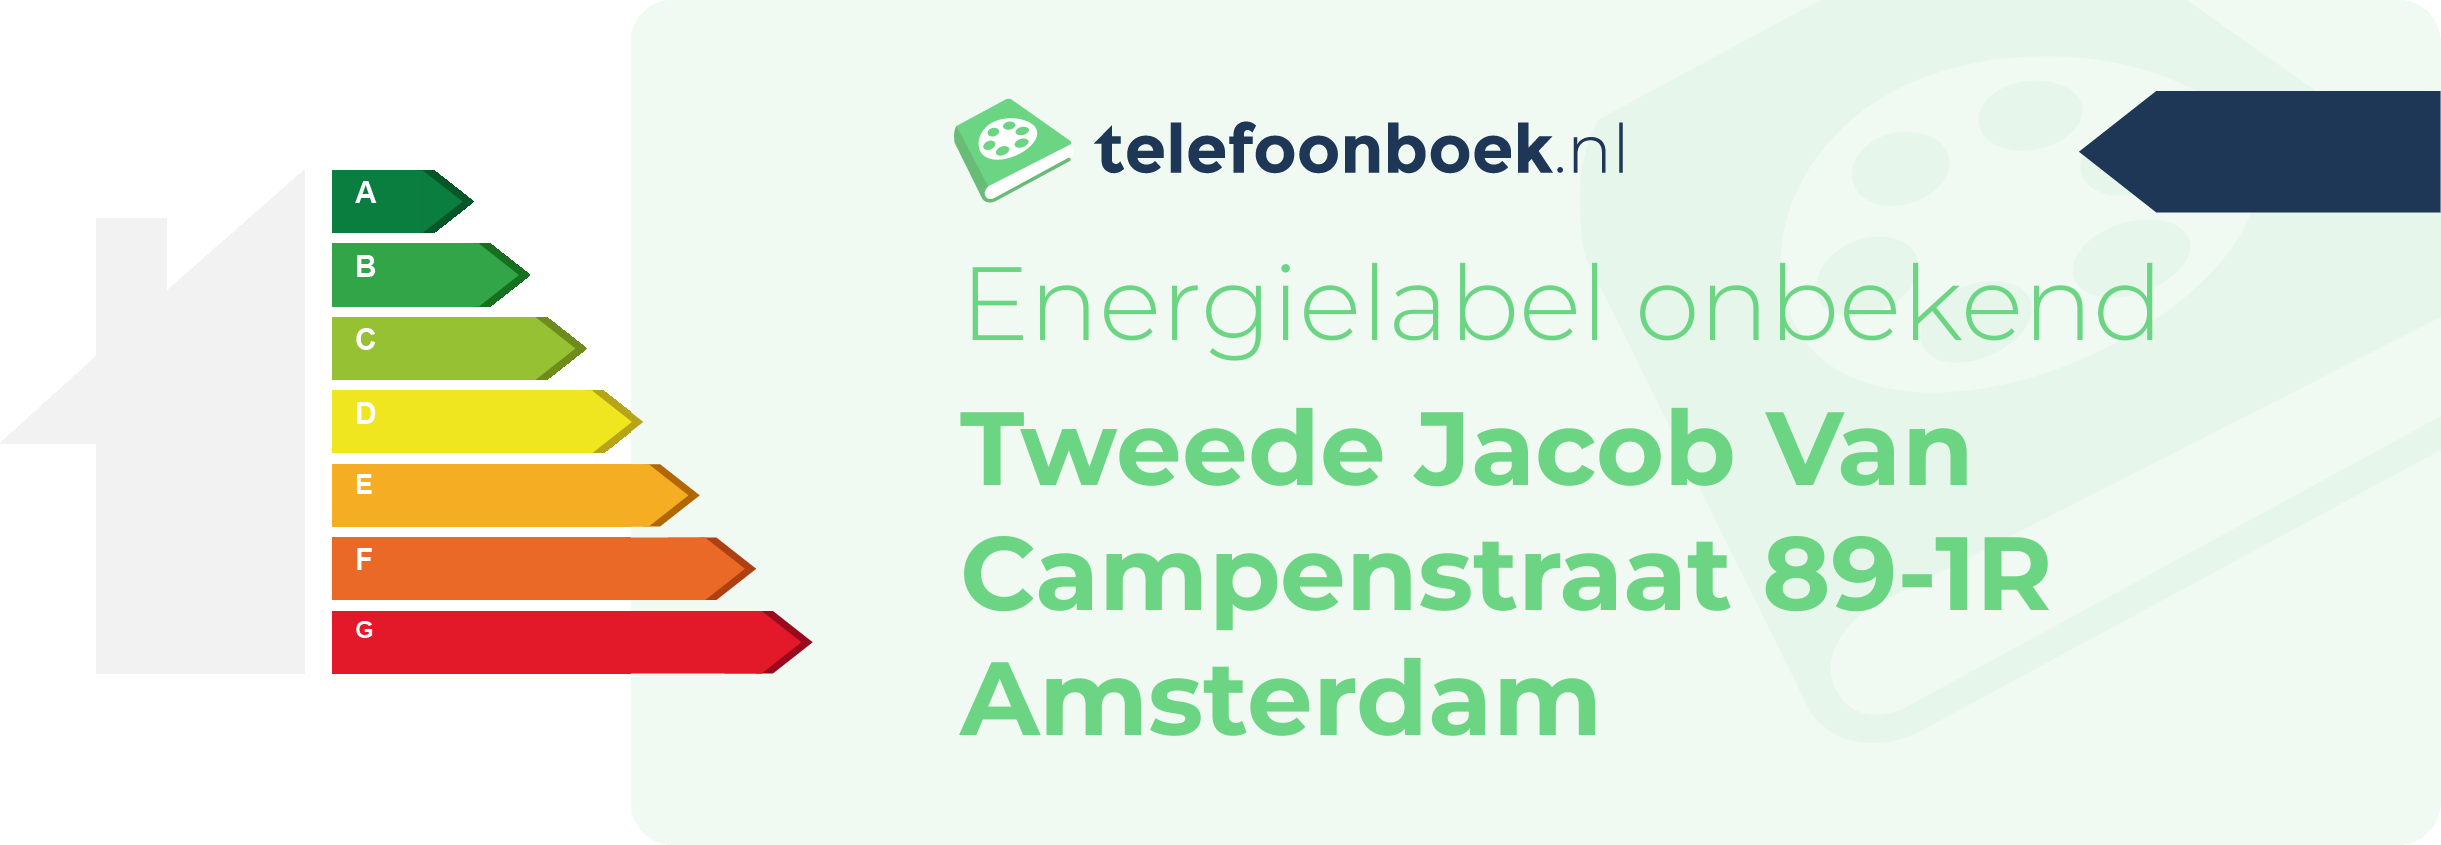 Energielabel Tweede Jacob Van Campenstraat 89-1R Amsterdam